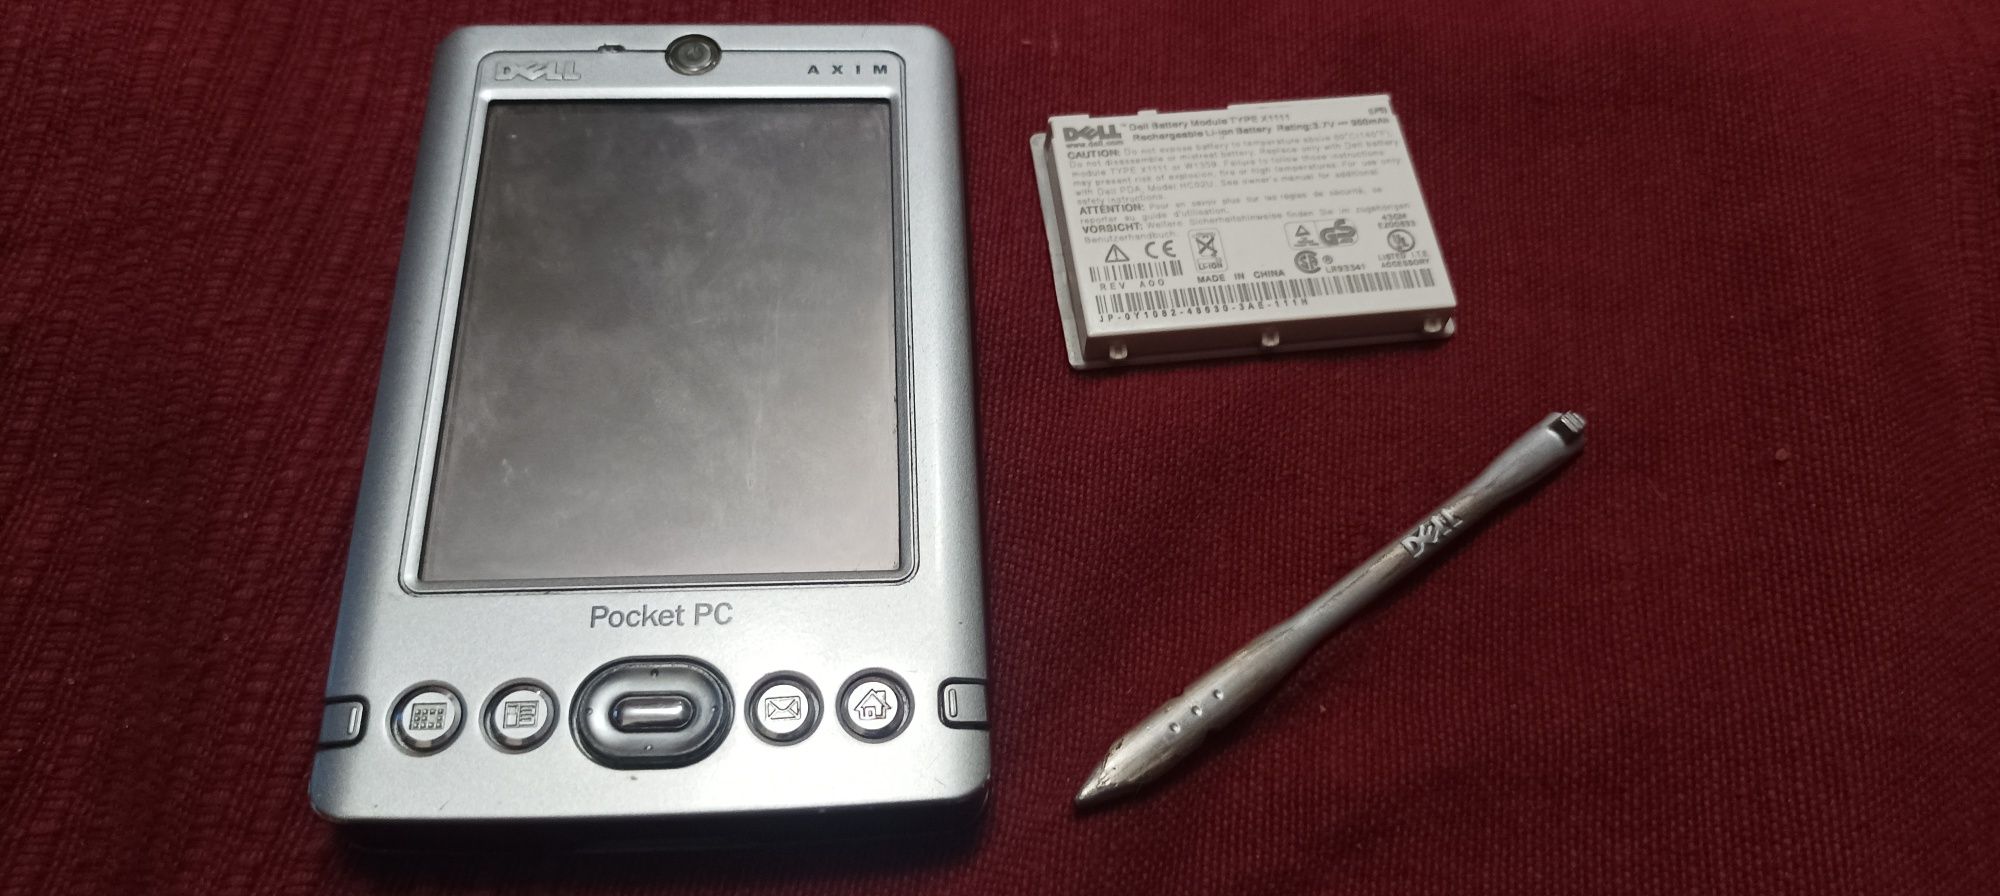 Dell axim Pocket PC